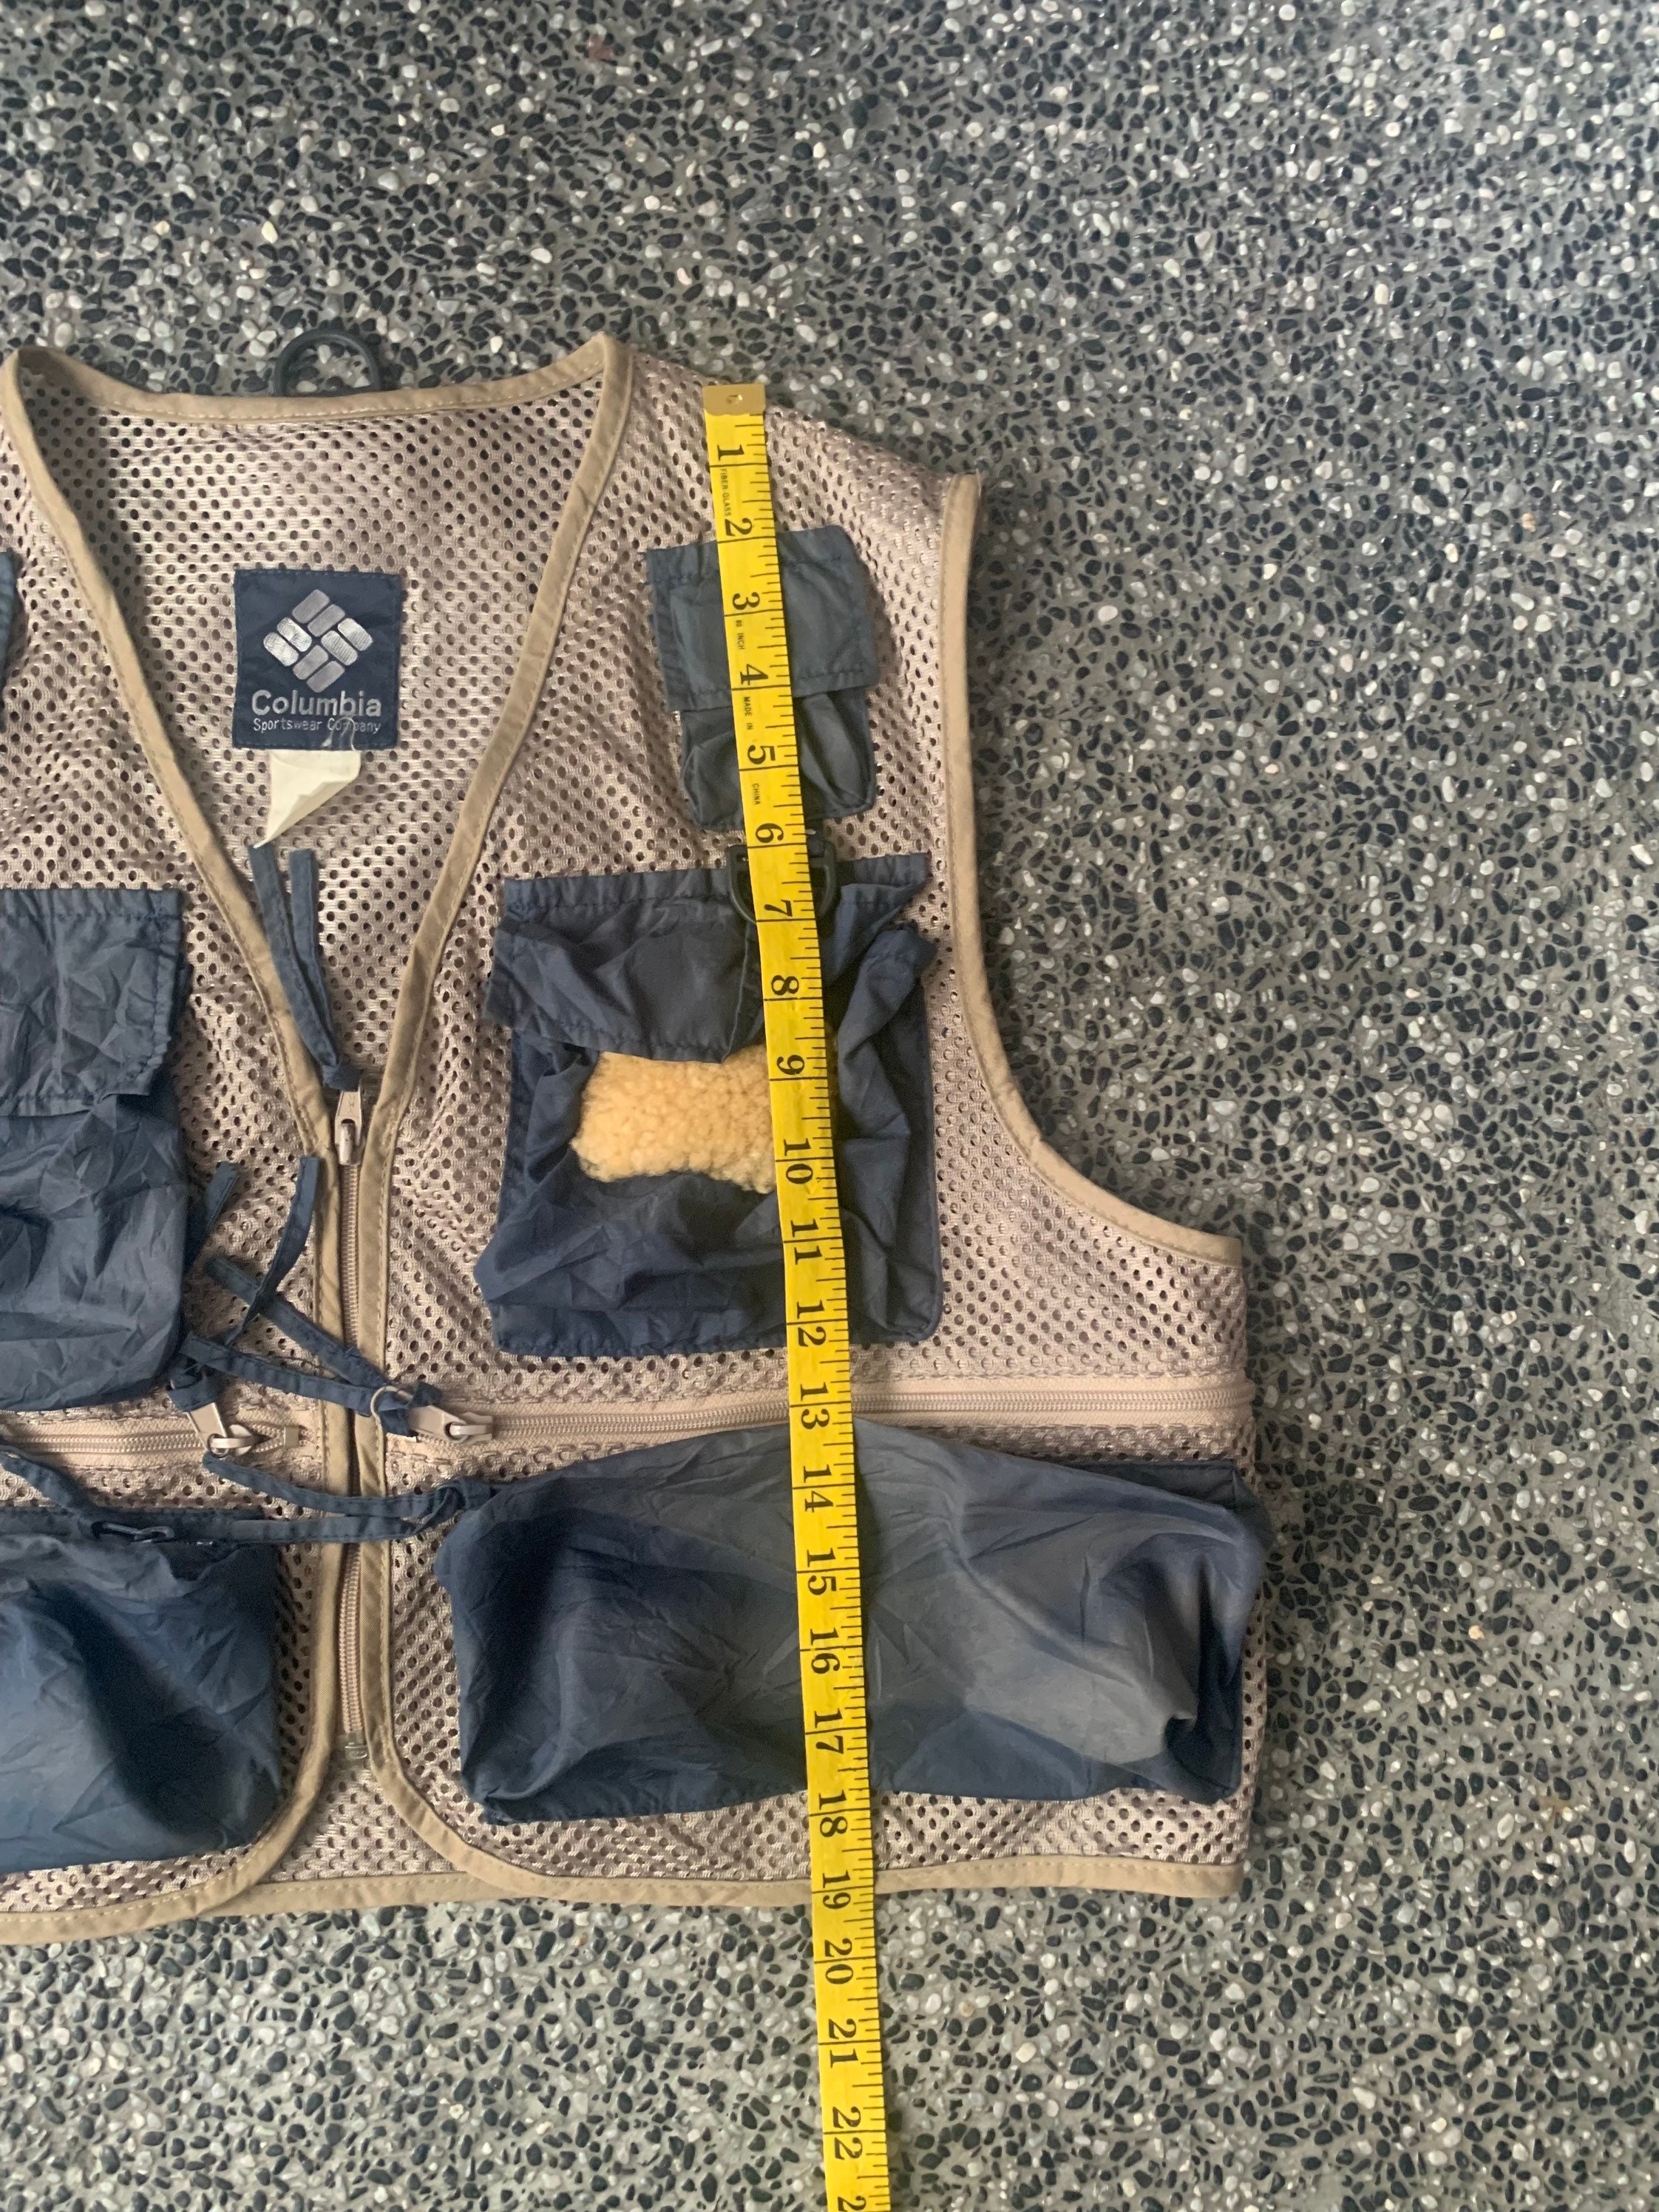 Asifvtg Vintage Columbia Outdoor Tactical Vest /Hunting Vest / Fishing Vest